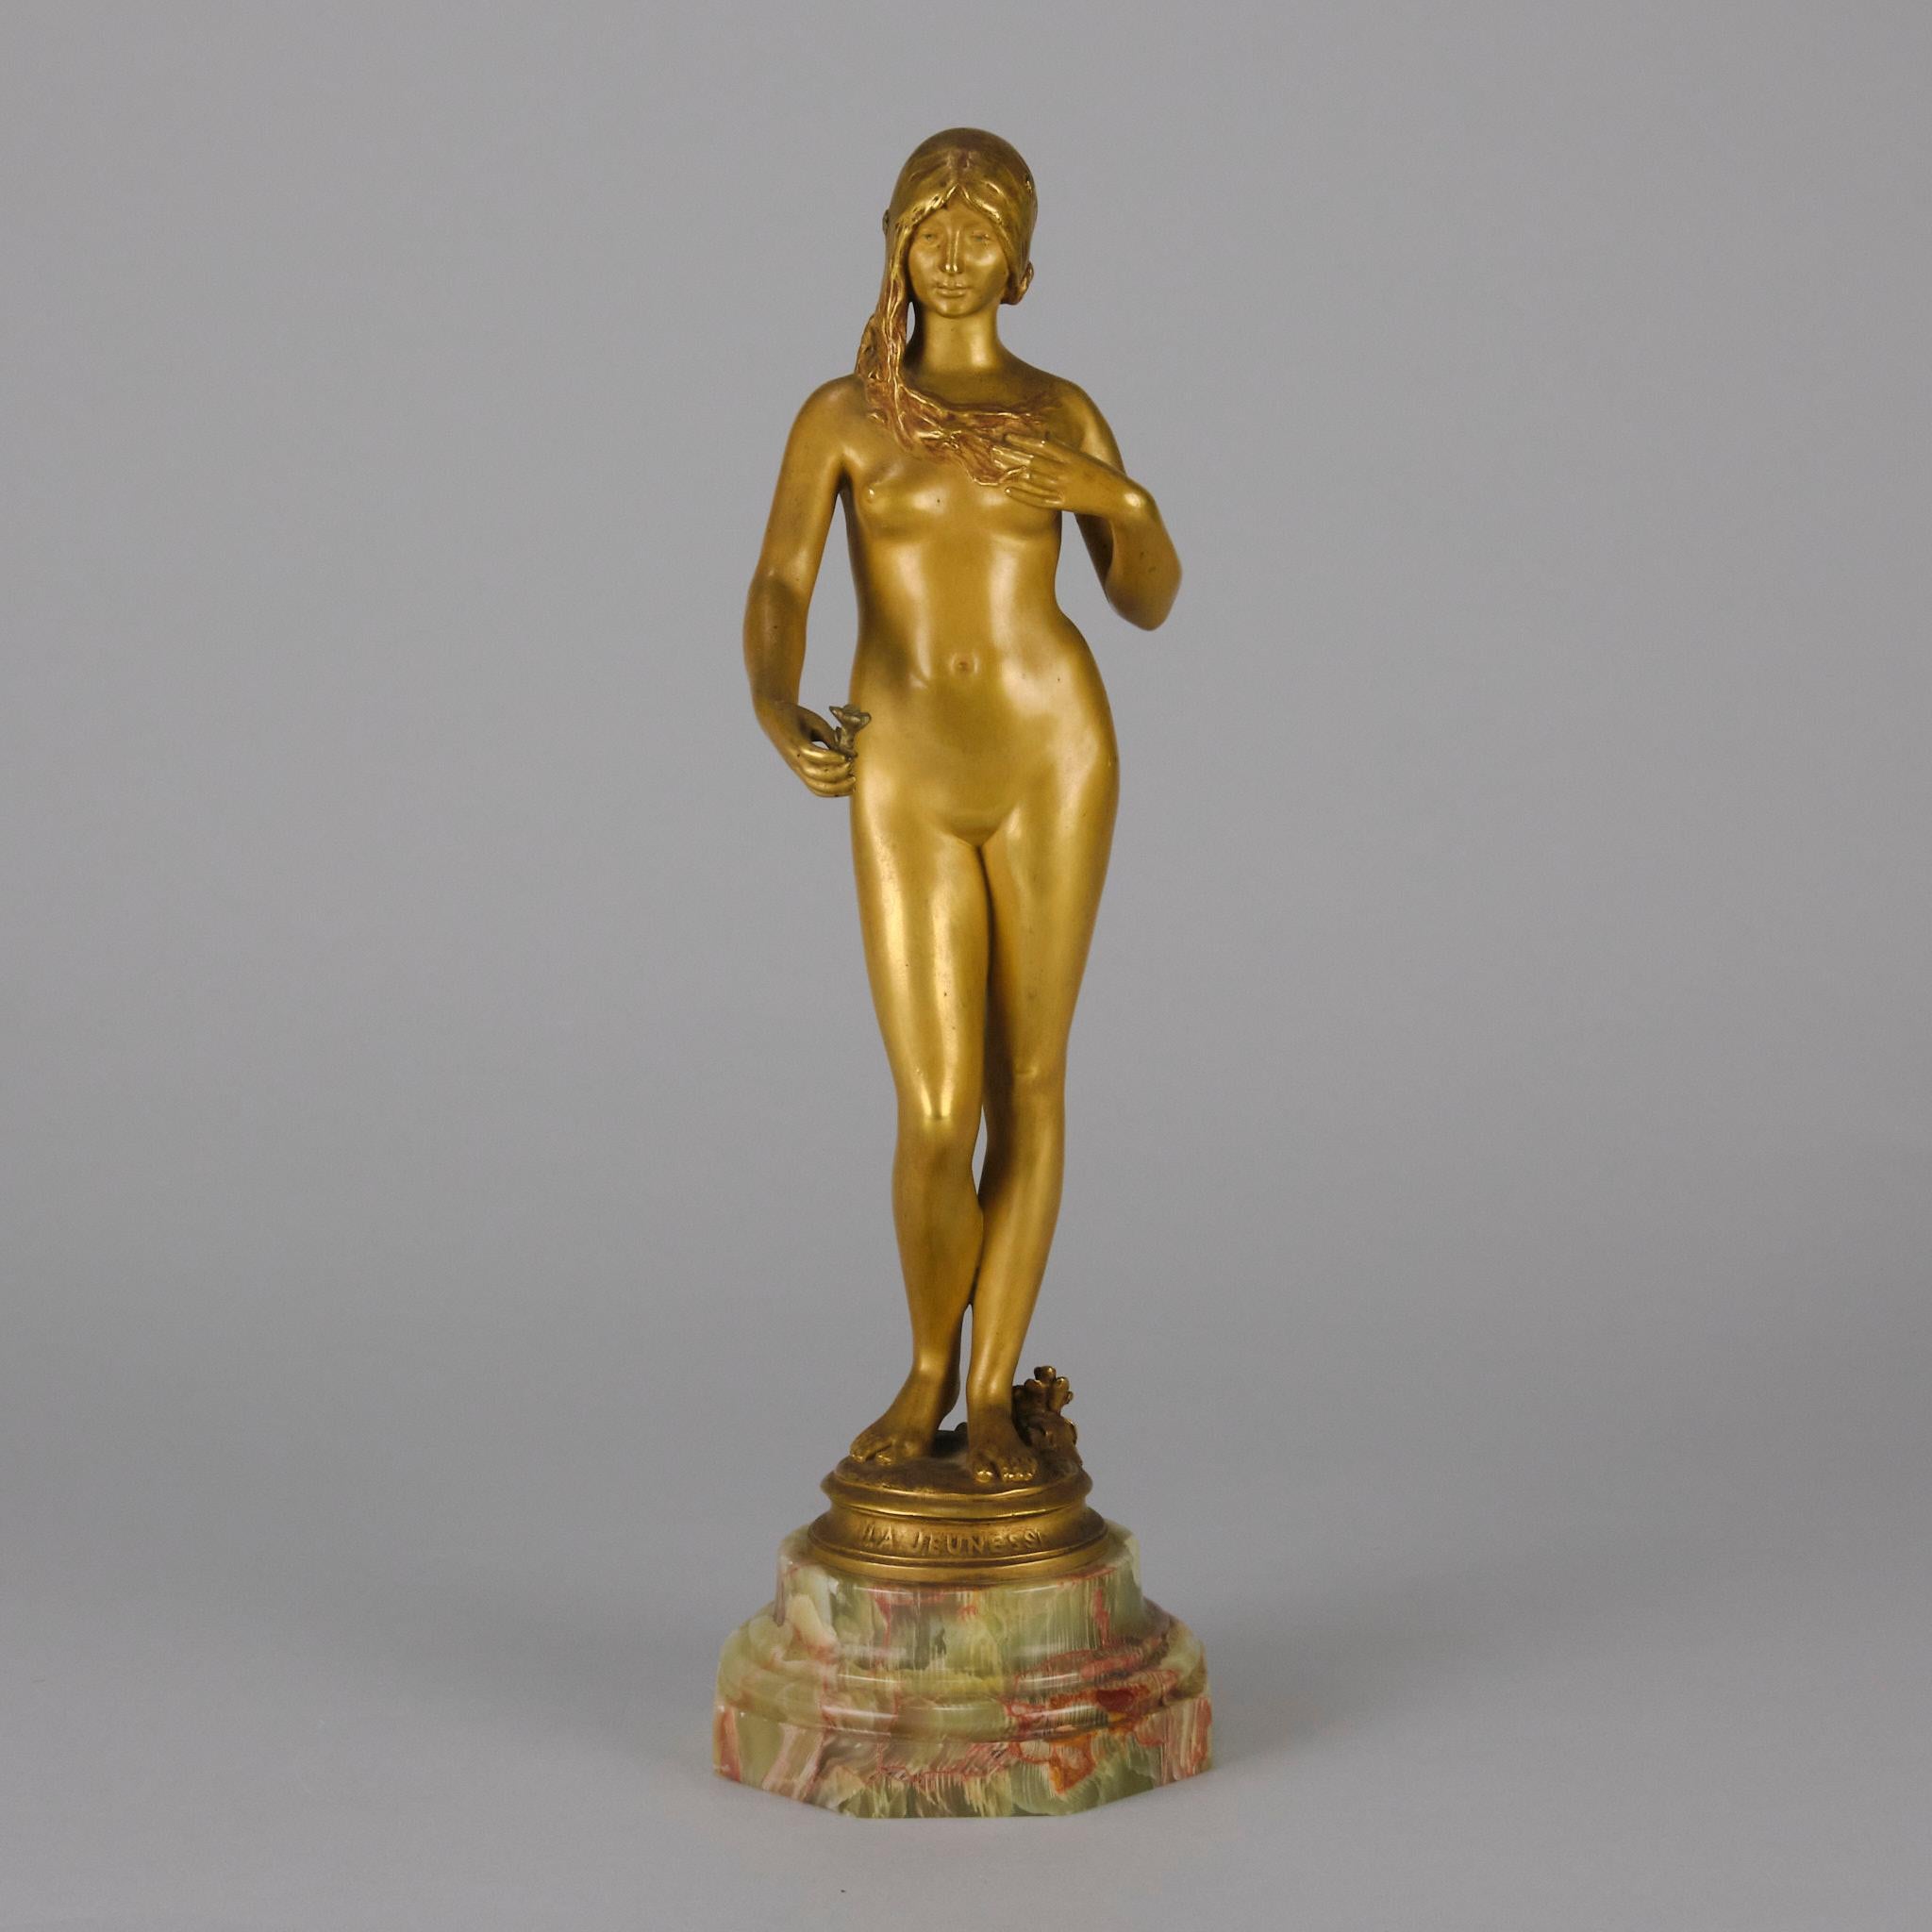 Ravissante figure en bronze doré Art Nouveau du début du 20e siècle représentant une très belle jeune femme tenant une fleur dans sa main droite. La surface du bronze présente de beaux détails et une belle finition. Reposant sur un socle en onyx